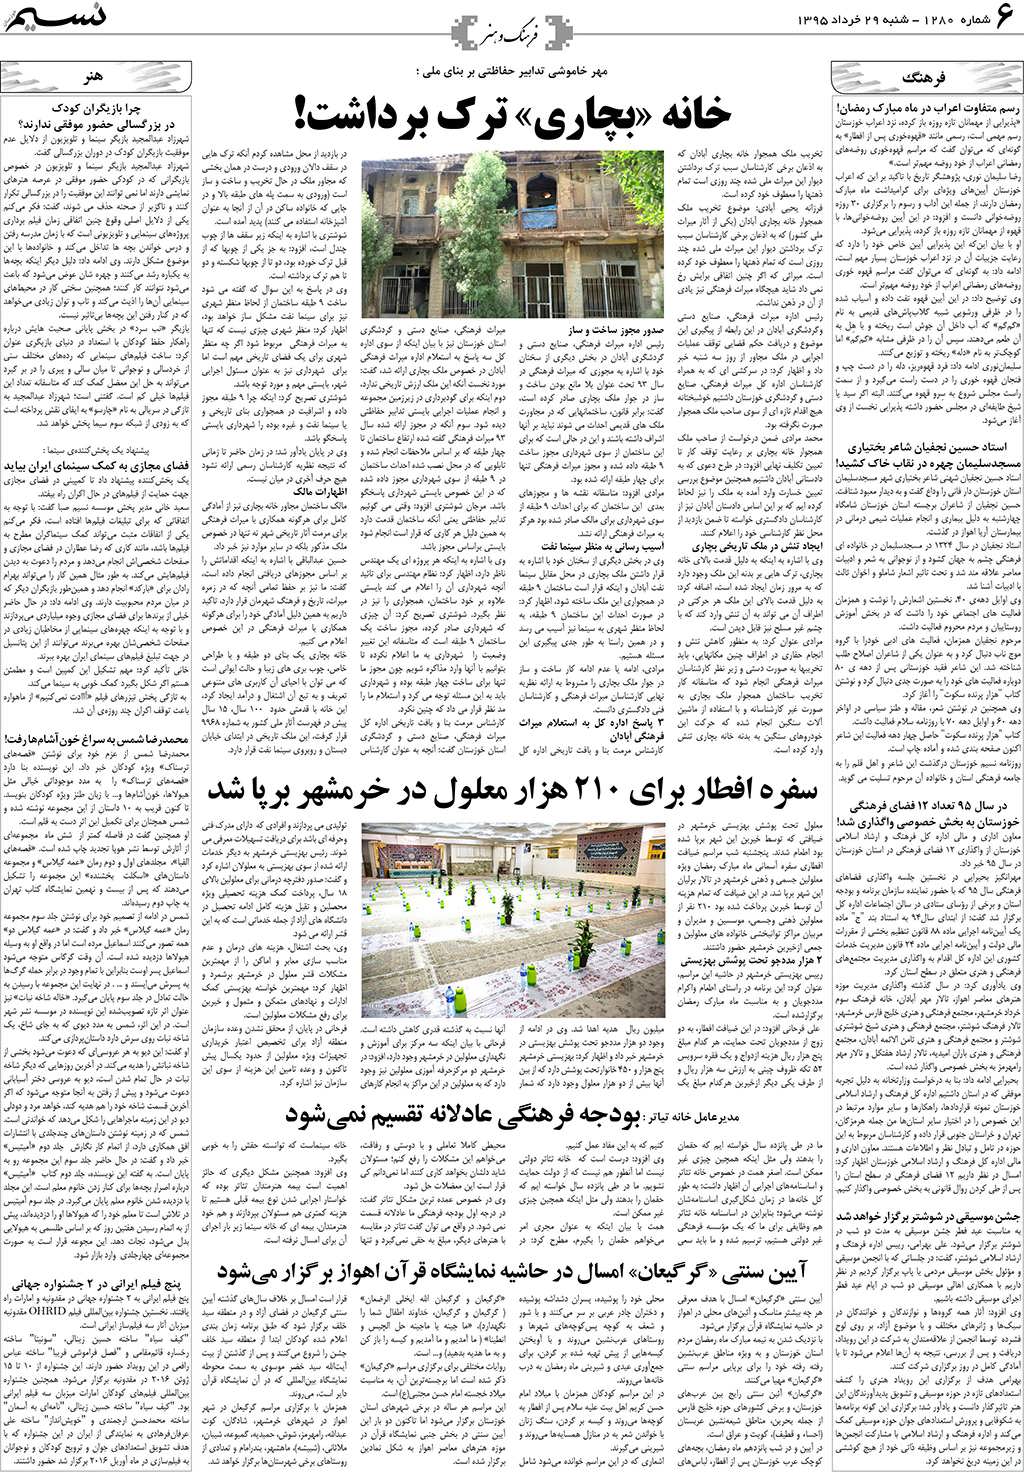 صفحه فرهنگ و هنر روزنامه نسیم شماره 1280